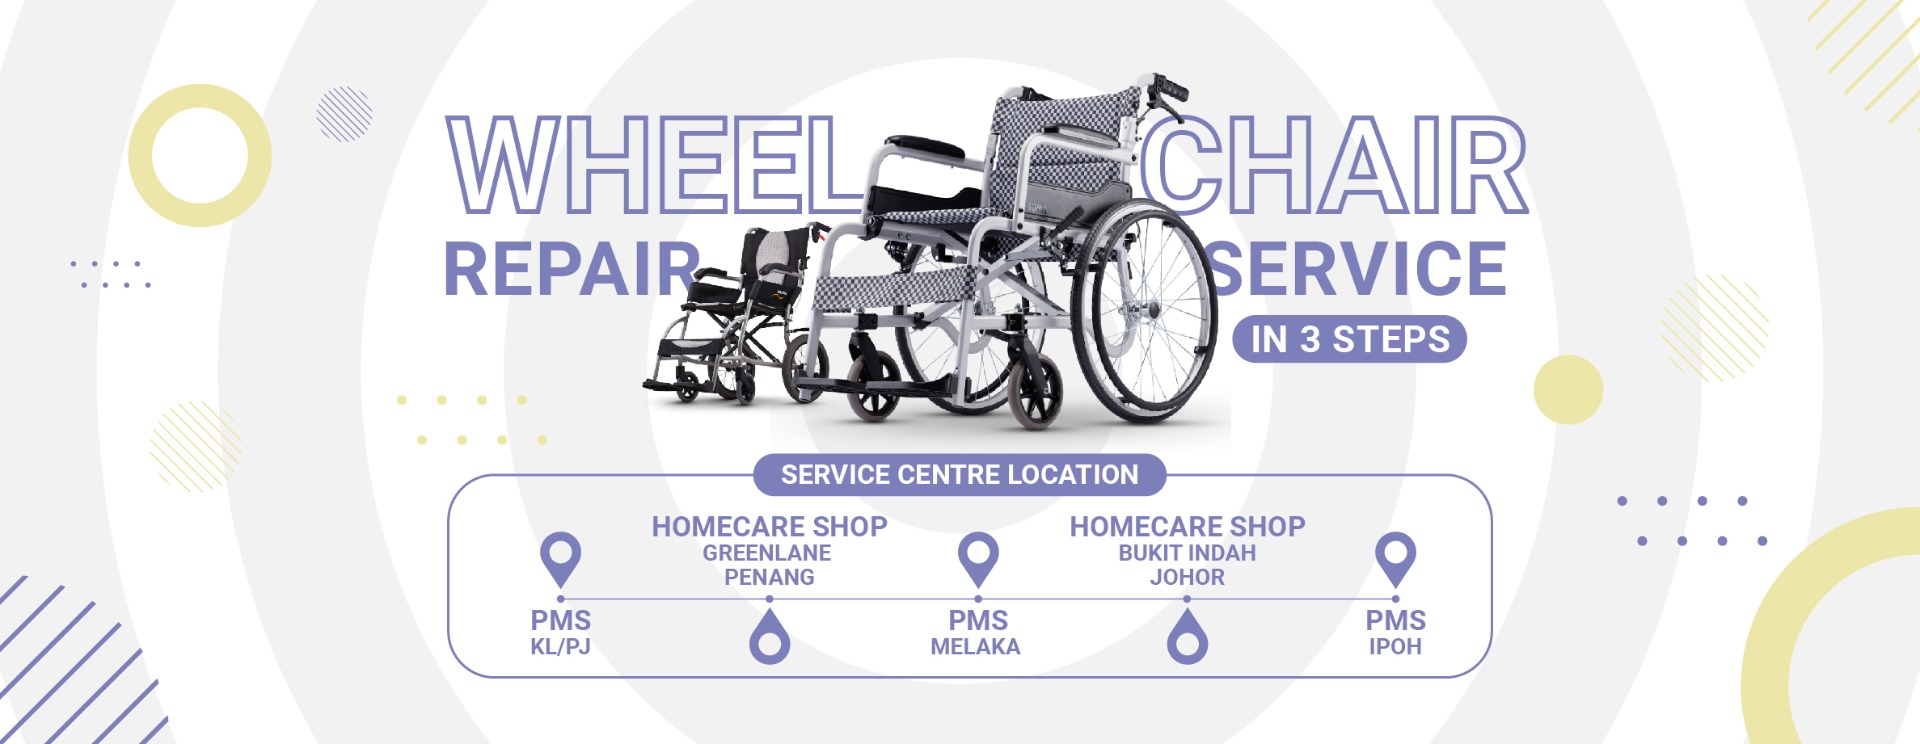 wheelchairrepair